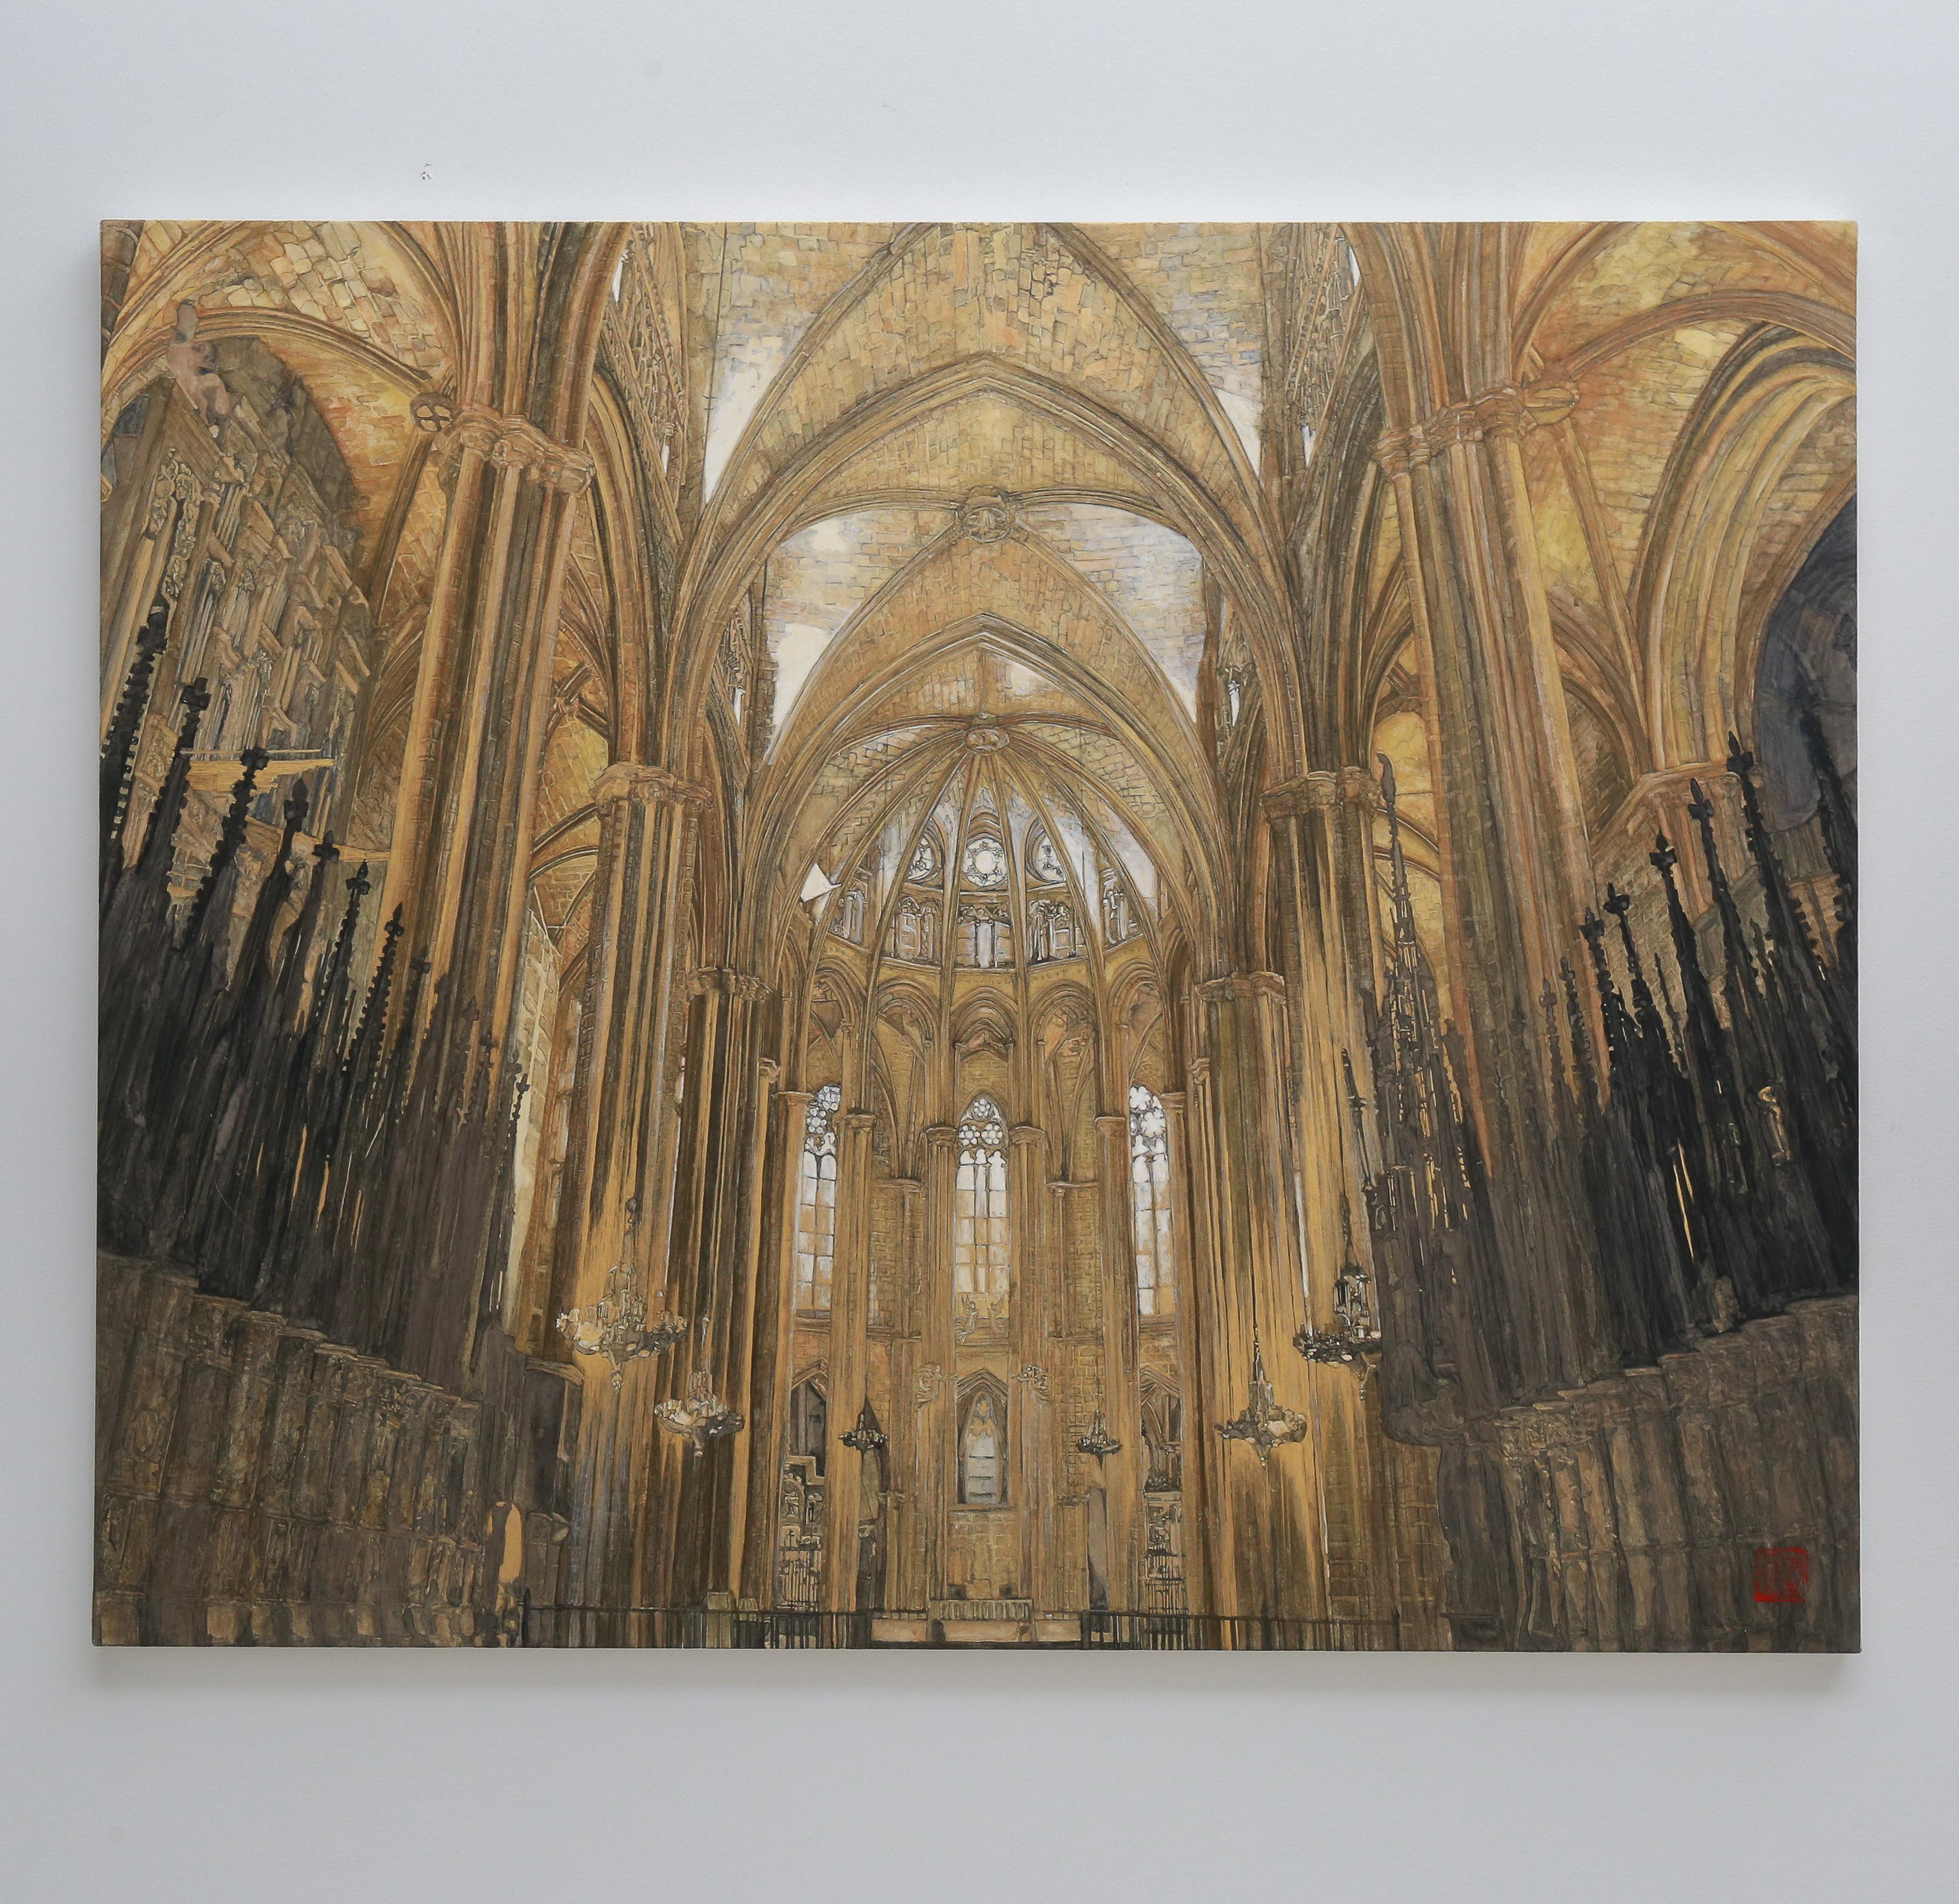 Barcelone cathédrale - Or et minéraux 24 carats, architecture, gothique, réalisme - Contemporain Painting par Maria Mitsumori